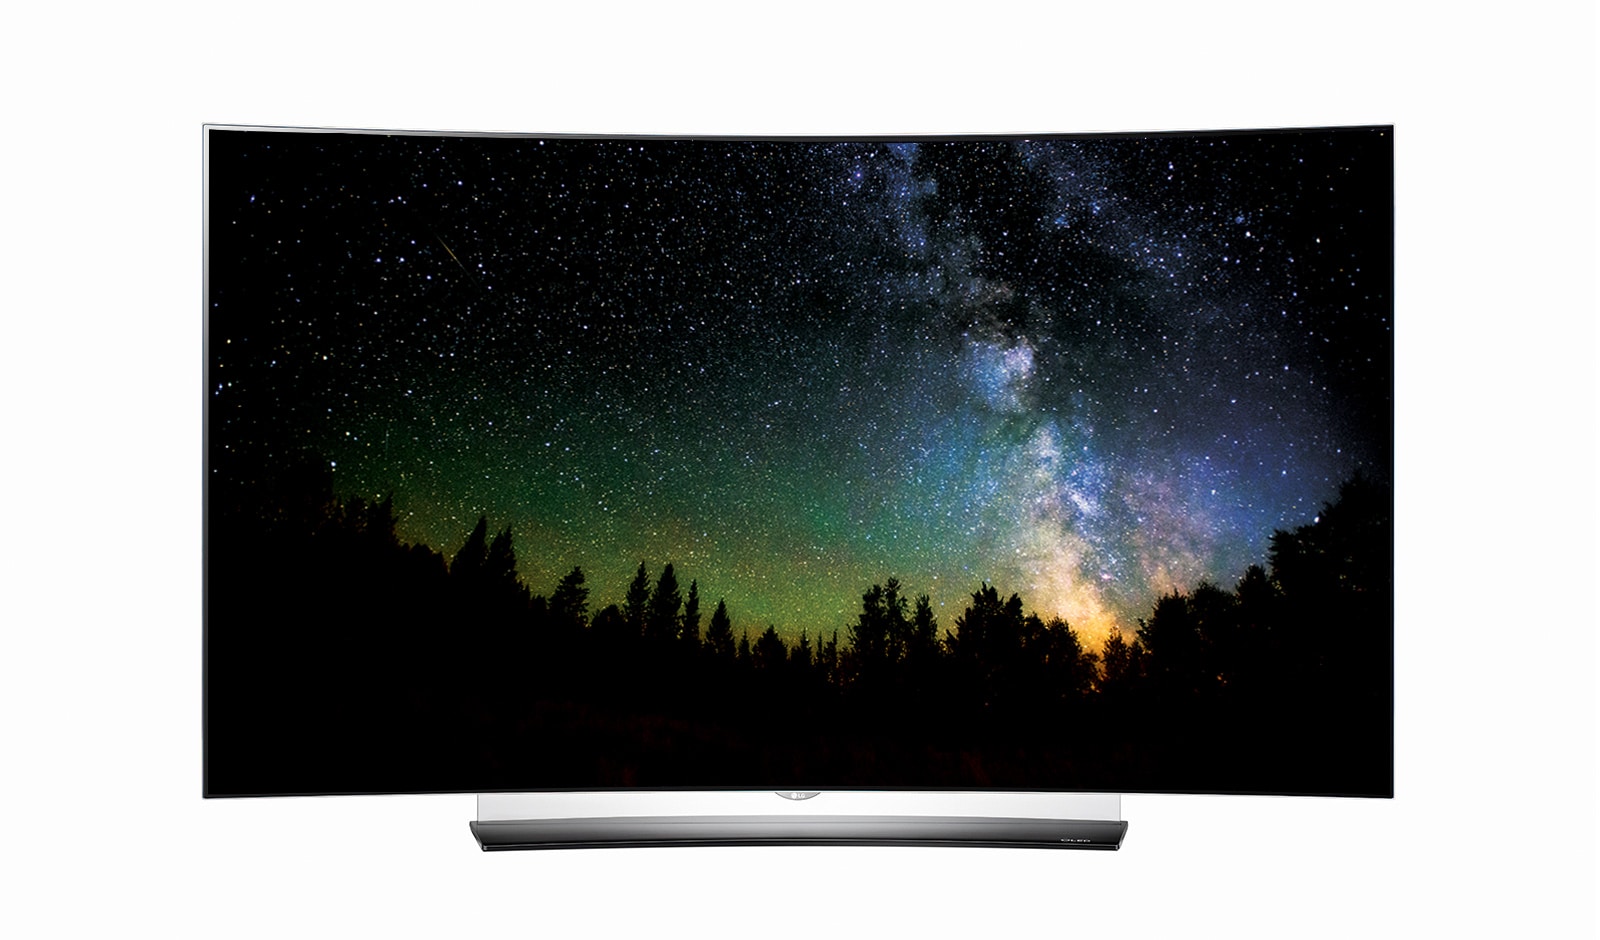 TV LG OLED65C6V - Telewizor OLED 65 cali